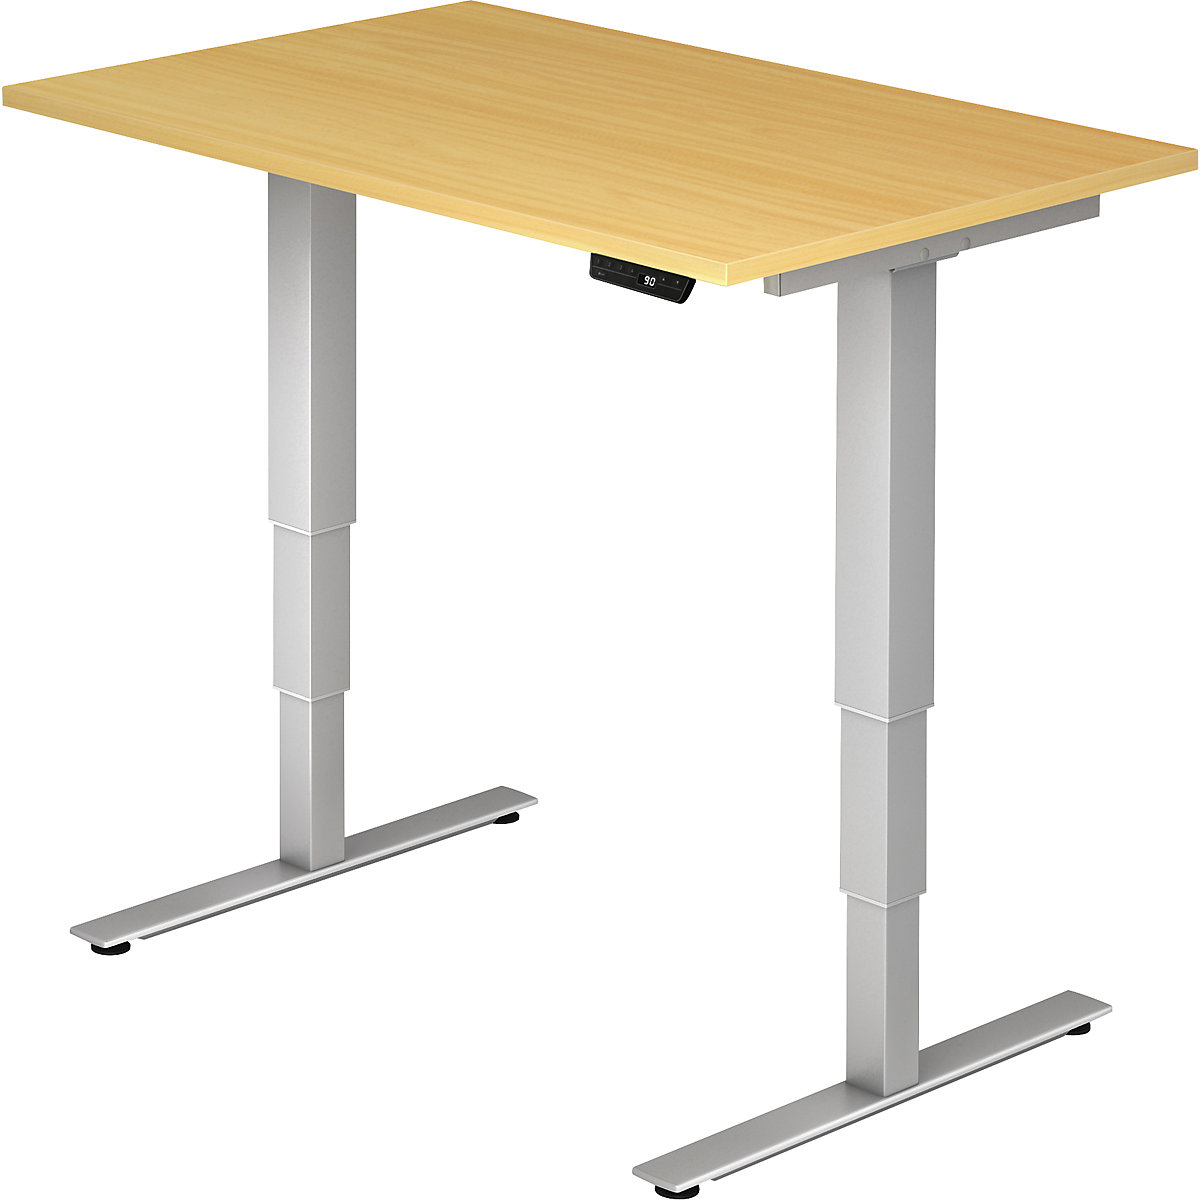 UPLINER-2.0 Psací stůl pro práci vestoje, s elektrickým přestavováním výšky, podstavec s nohami ve tvaru T, šířka 1200 mm, bukový dekor